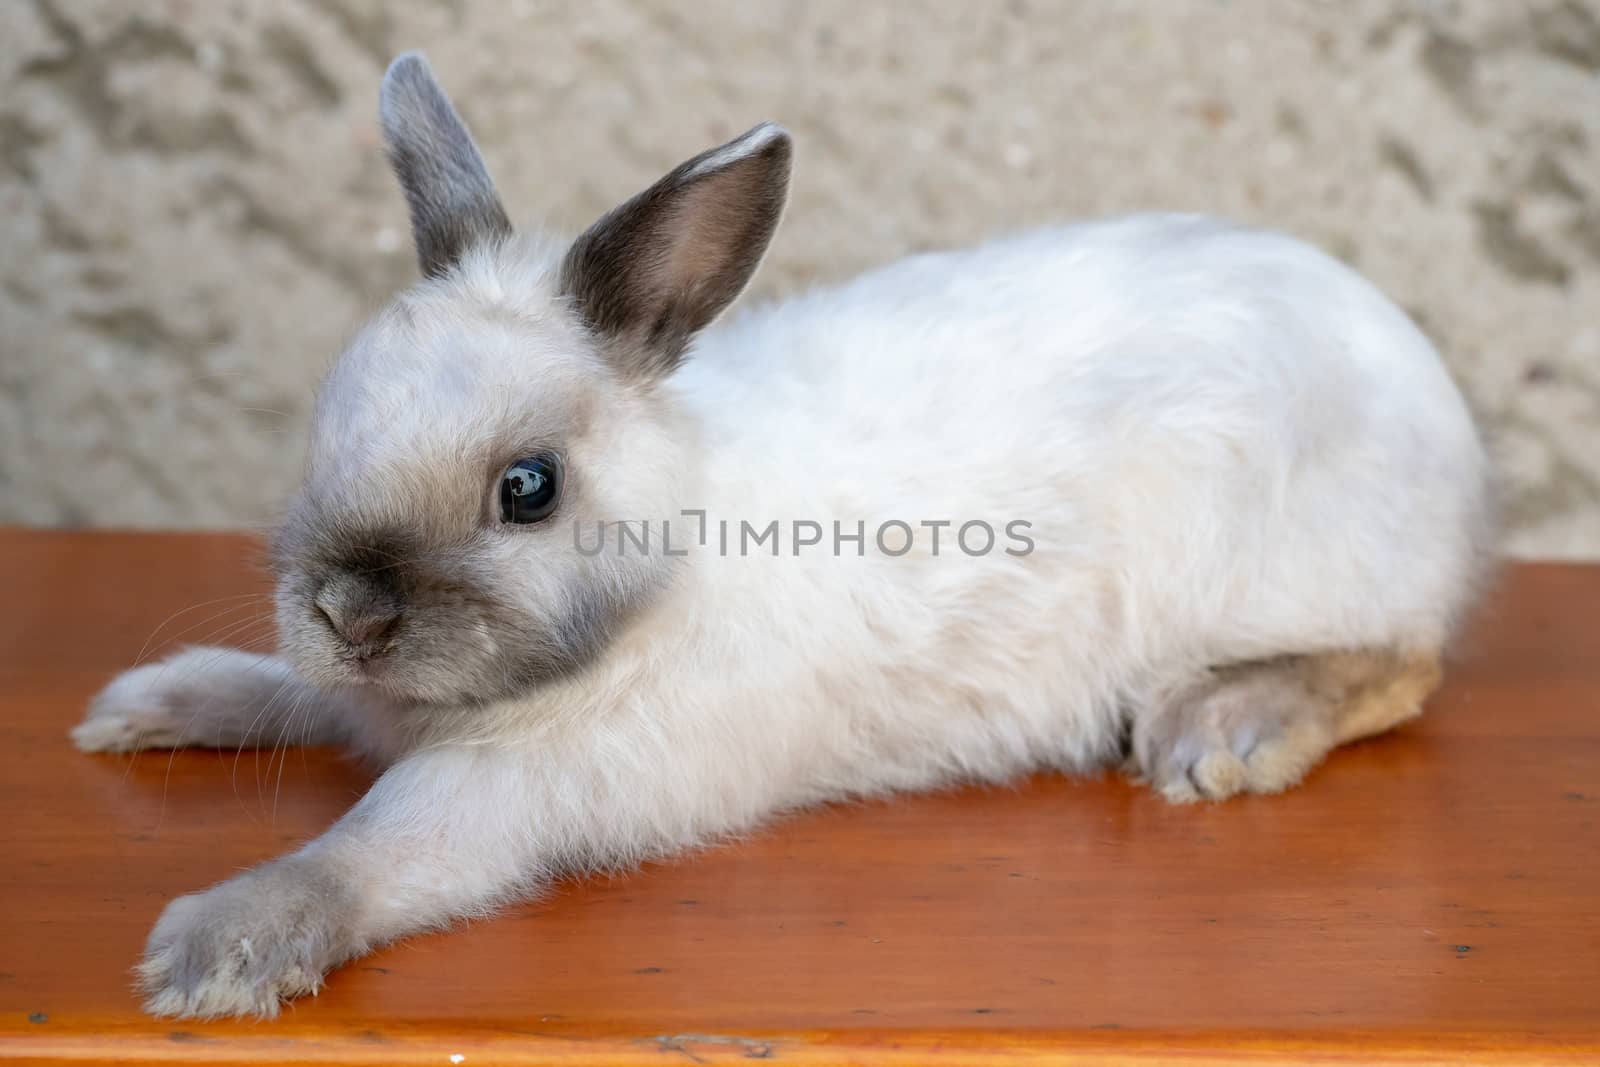 Little rabbit on wooden desk